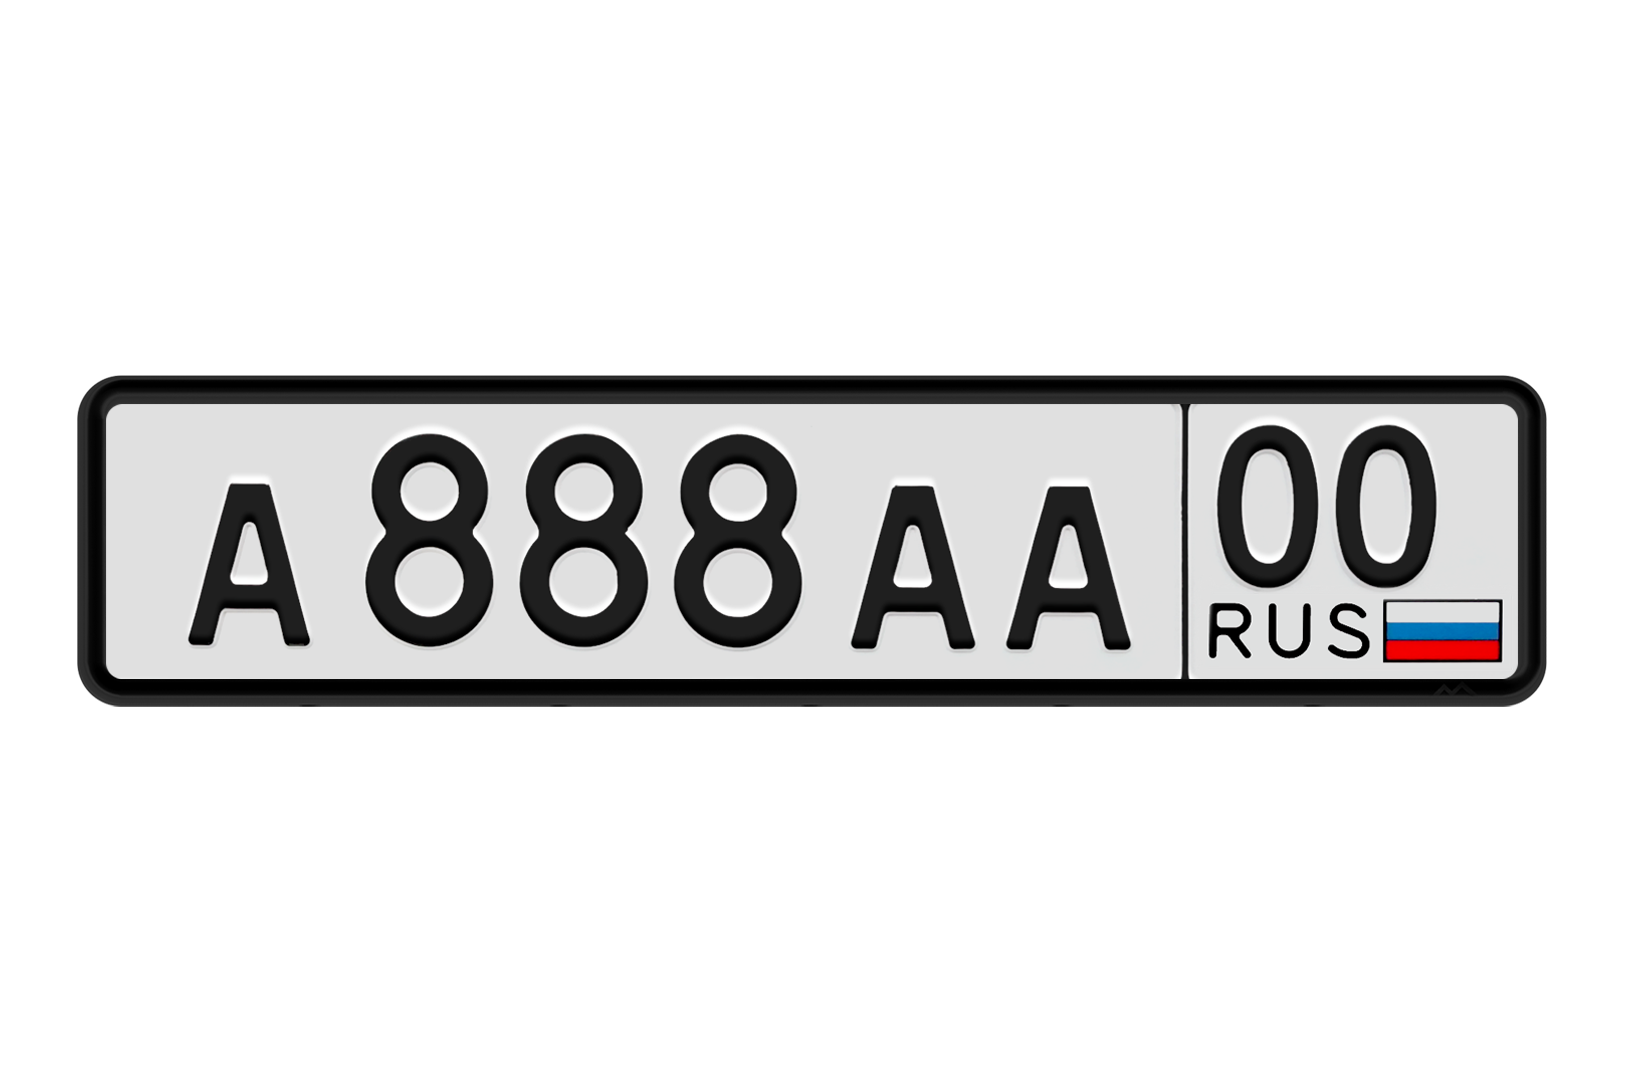 Русские номера без региона. Автомобильные номера. Номерной знак автомобиля. Макет автомобильного номера. Гос номерной знак автомобиля.